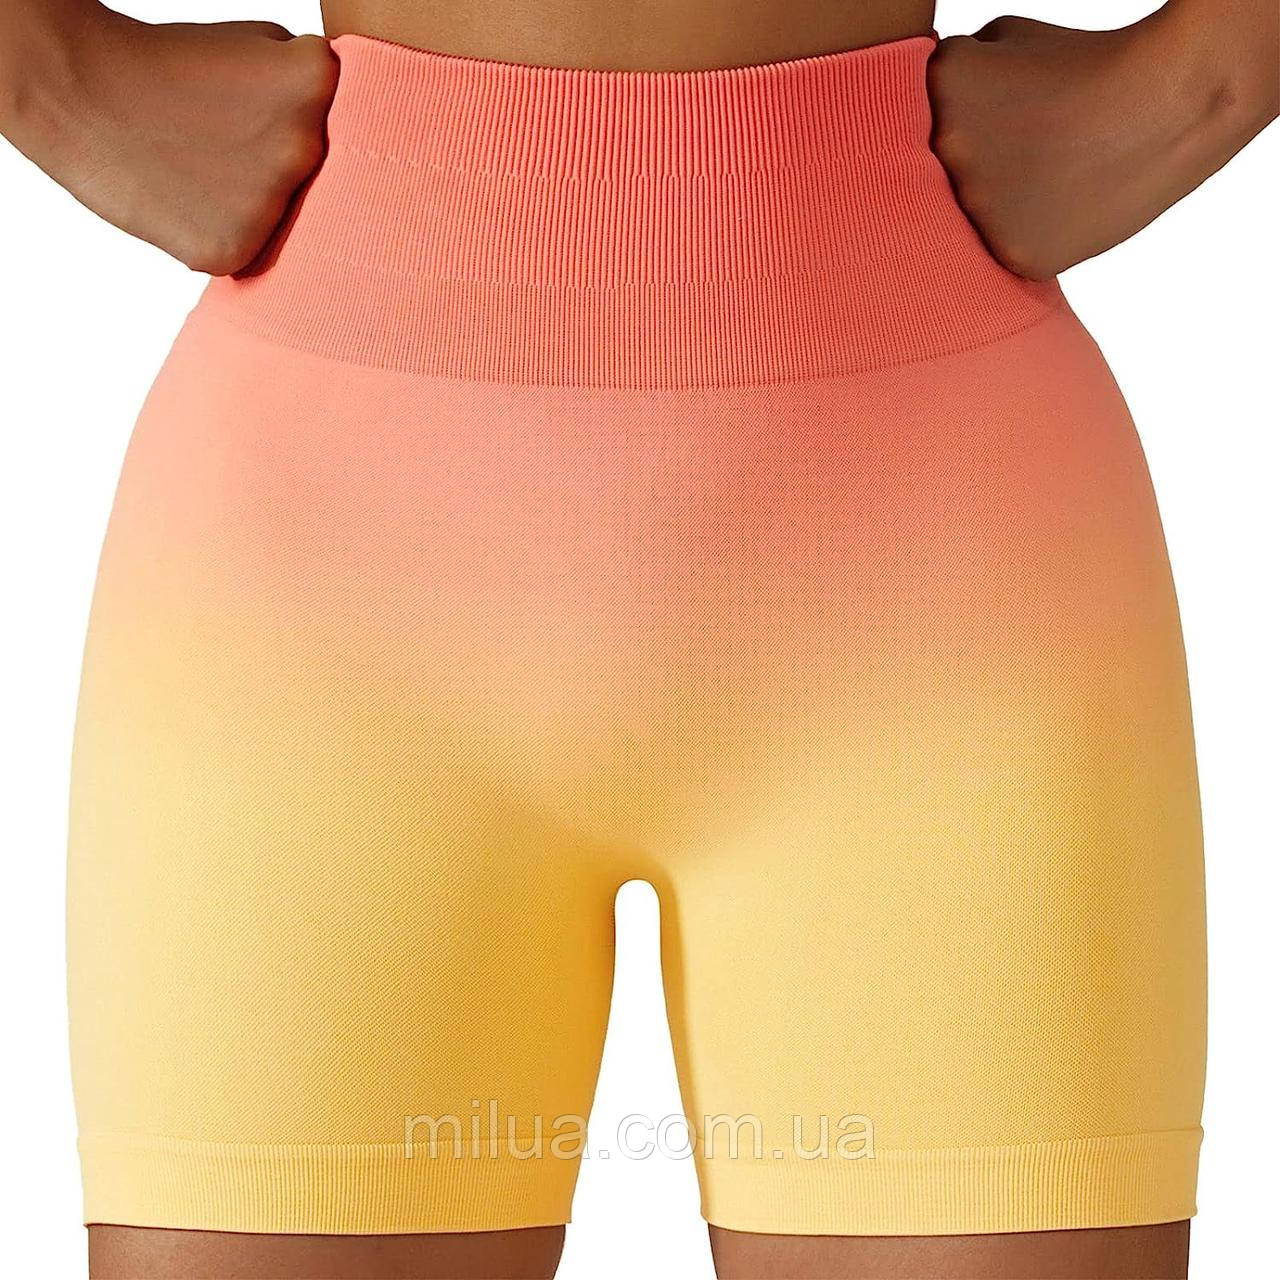 Жіночі спортивні шорти легінси для фітнесу спорту з ефектом пуш-ап помаранчево-жовті S